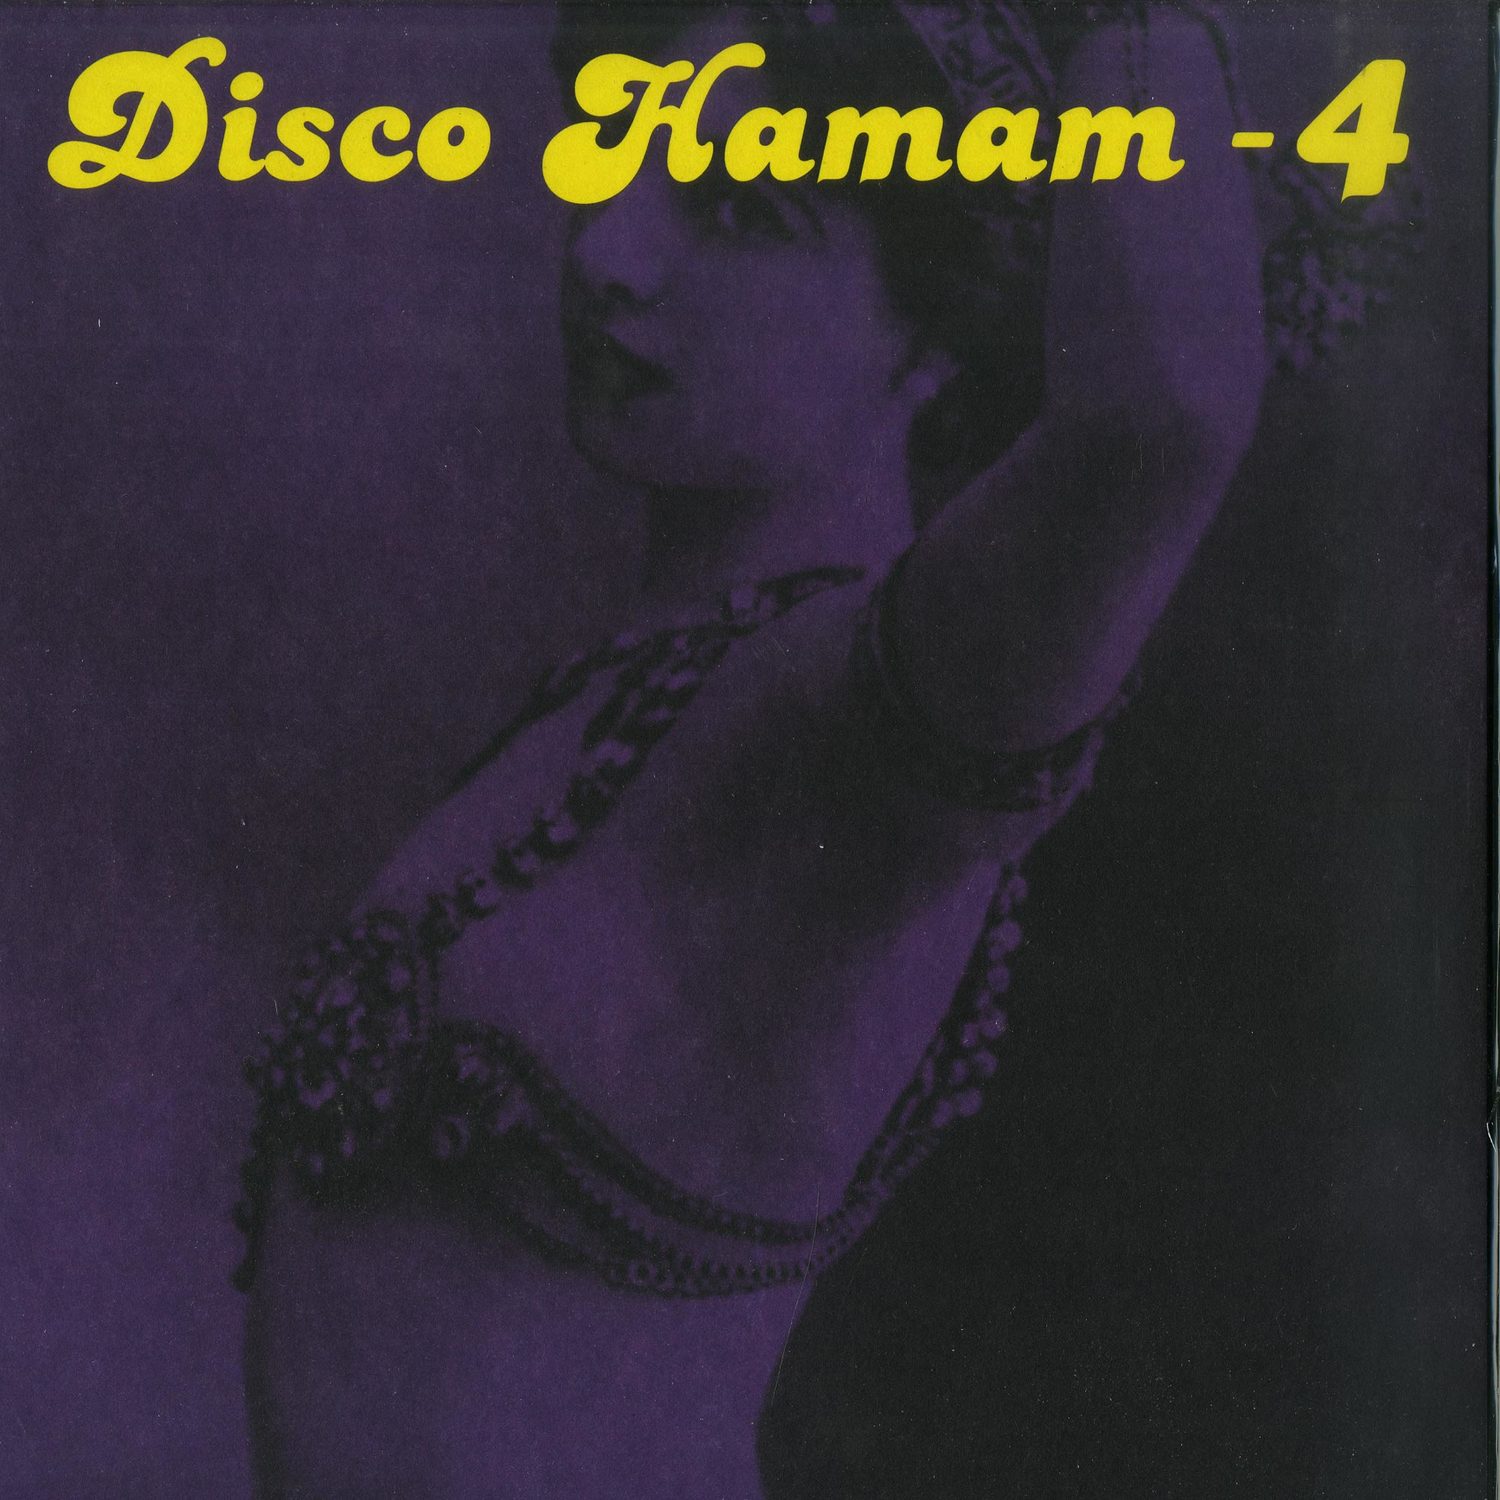 Tokyo Matt & Afacan Soundsystem - DISCO HAMAM 04